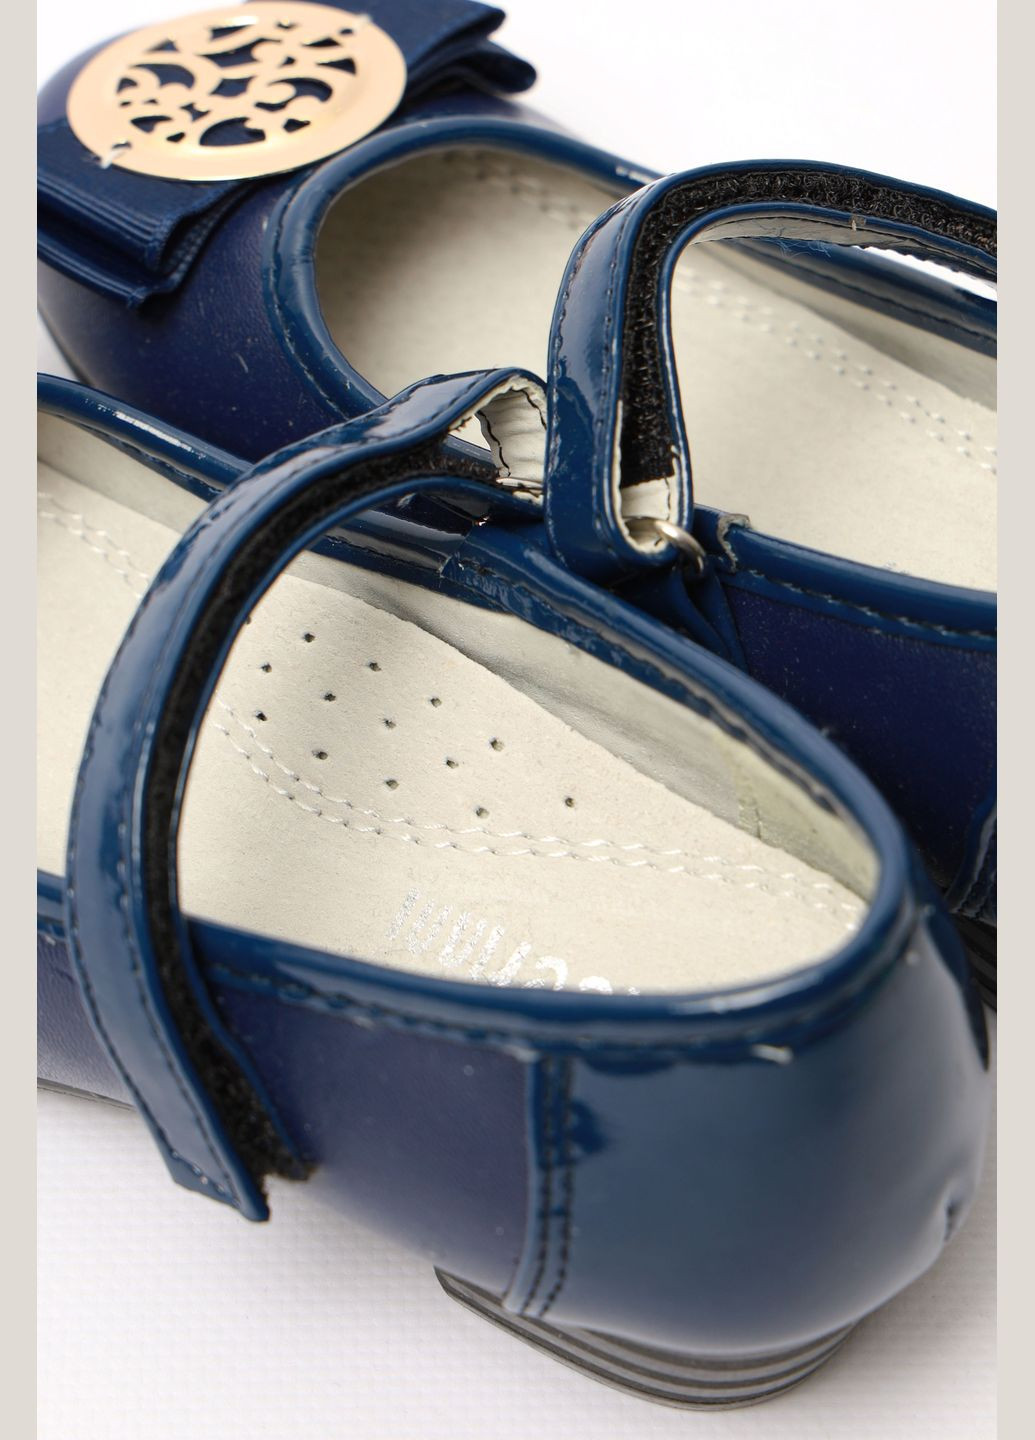 Синие туфли детские для девочки синего цвета без шнурков Let's Shop